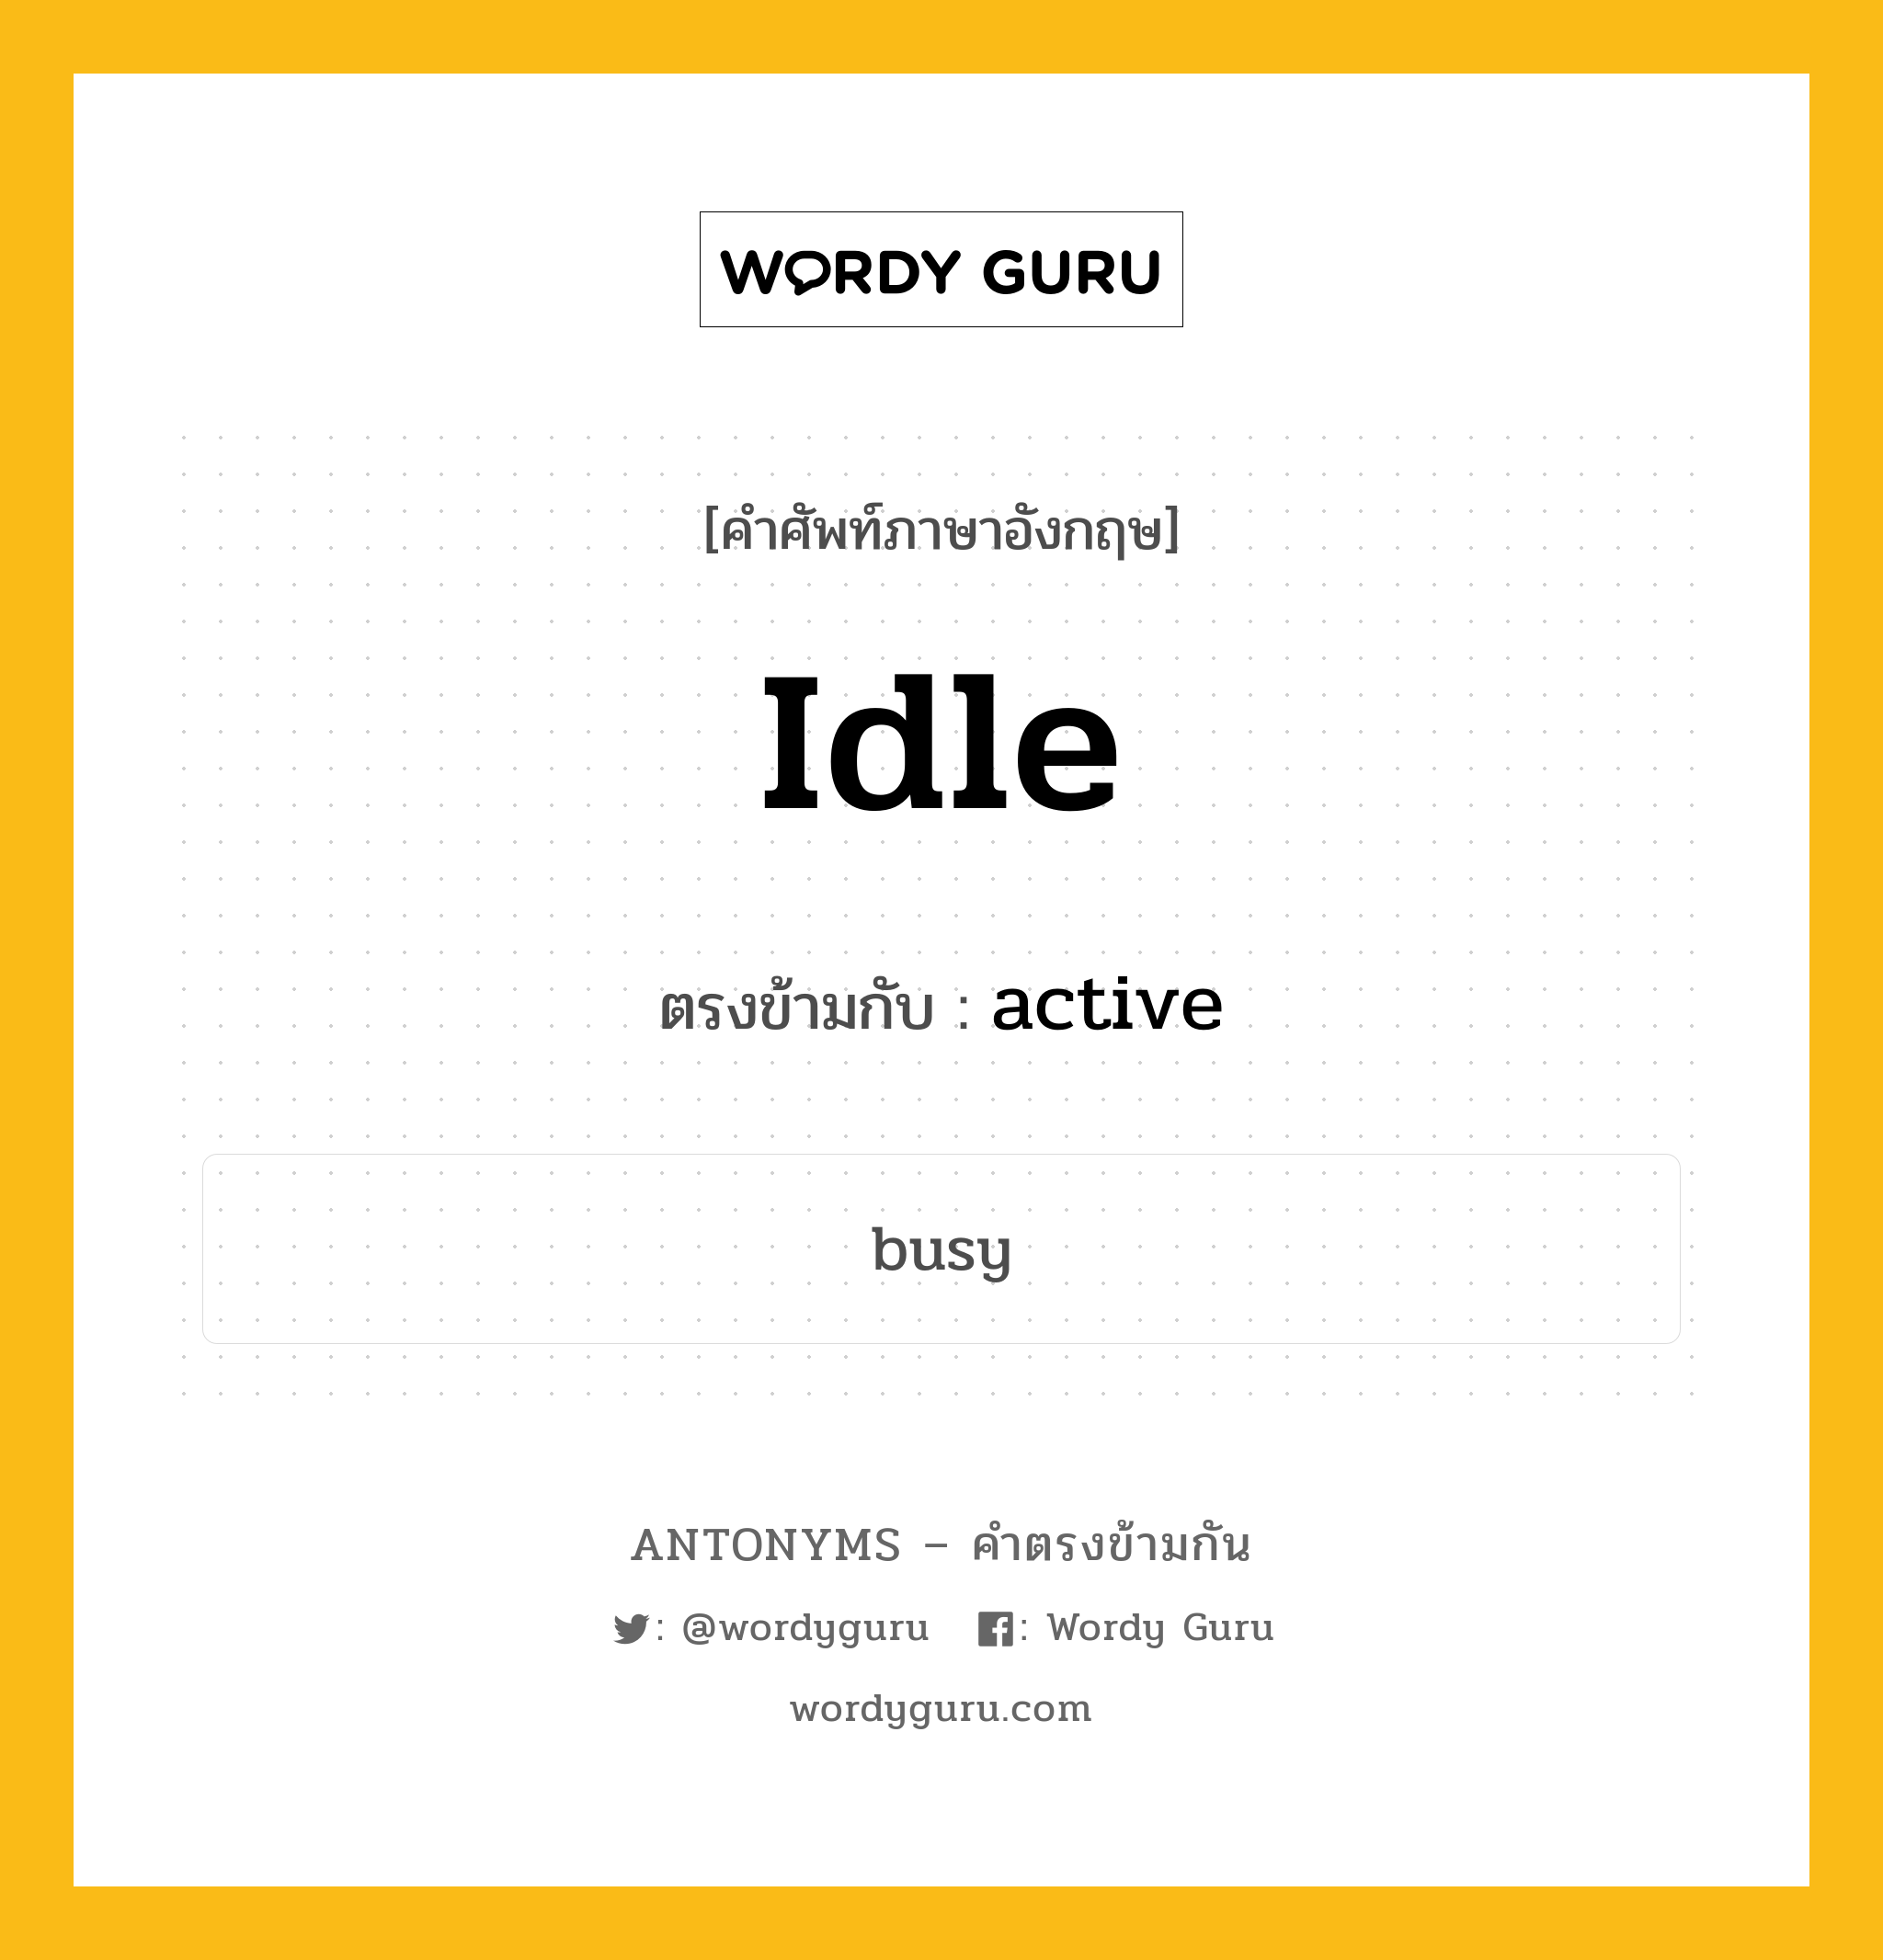 idle เป็นคำตรงข้ามกับคำไหนบ้าง?, คำศัพท์ภาษาอังกฤษ idle ตรงข้ามกับ active หมวด active